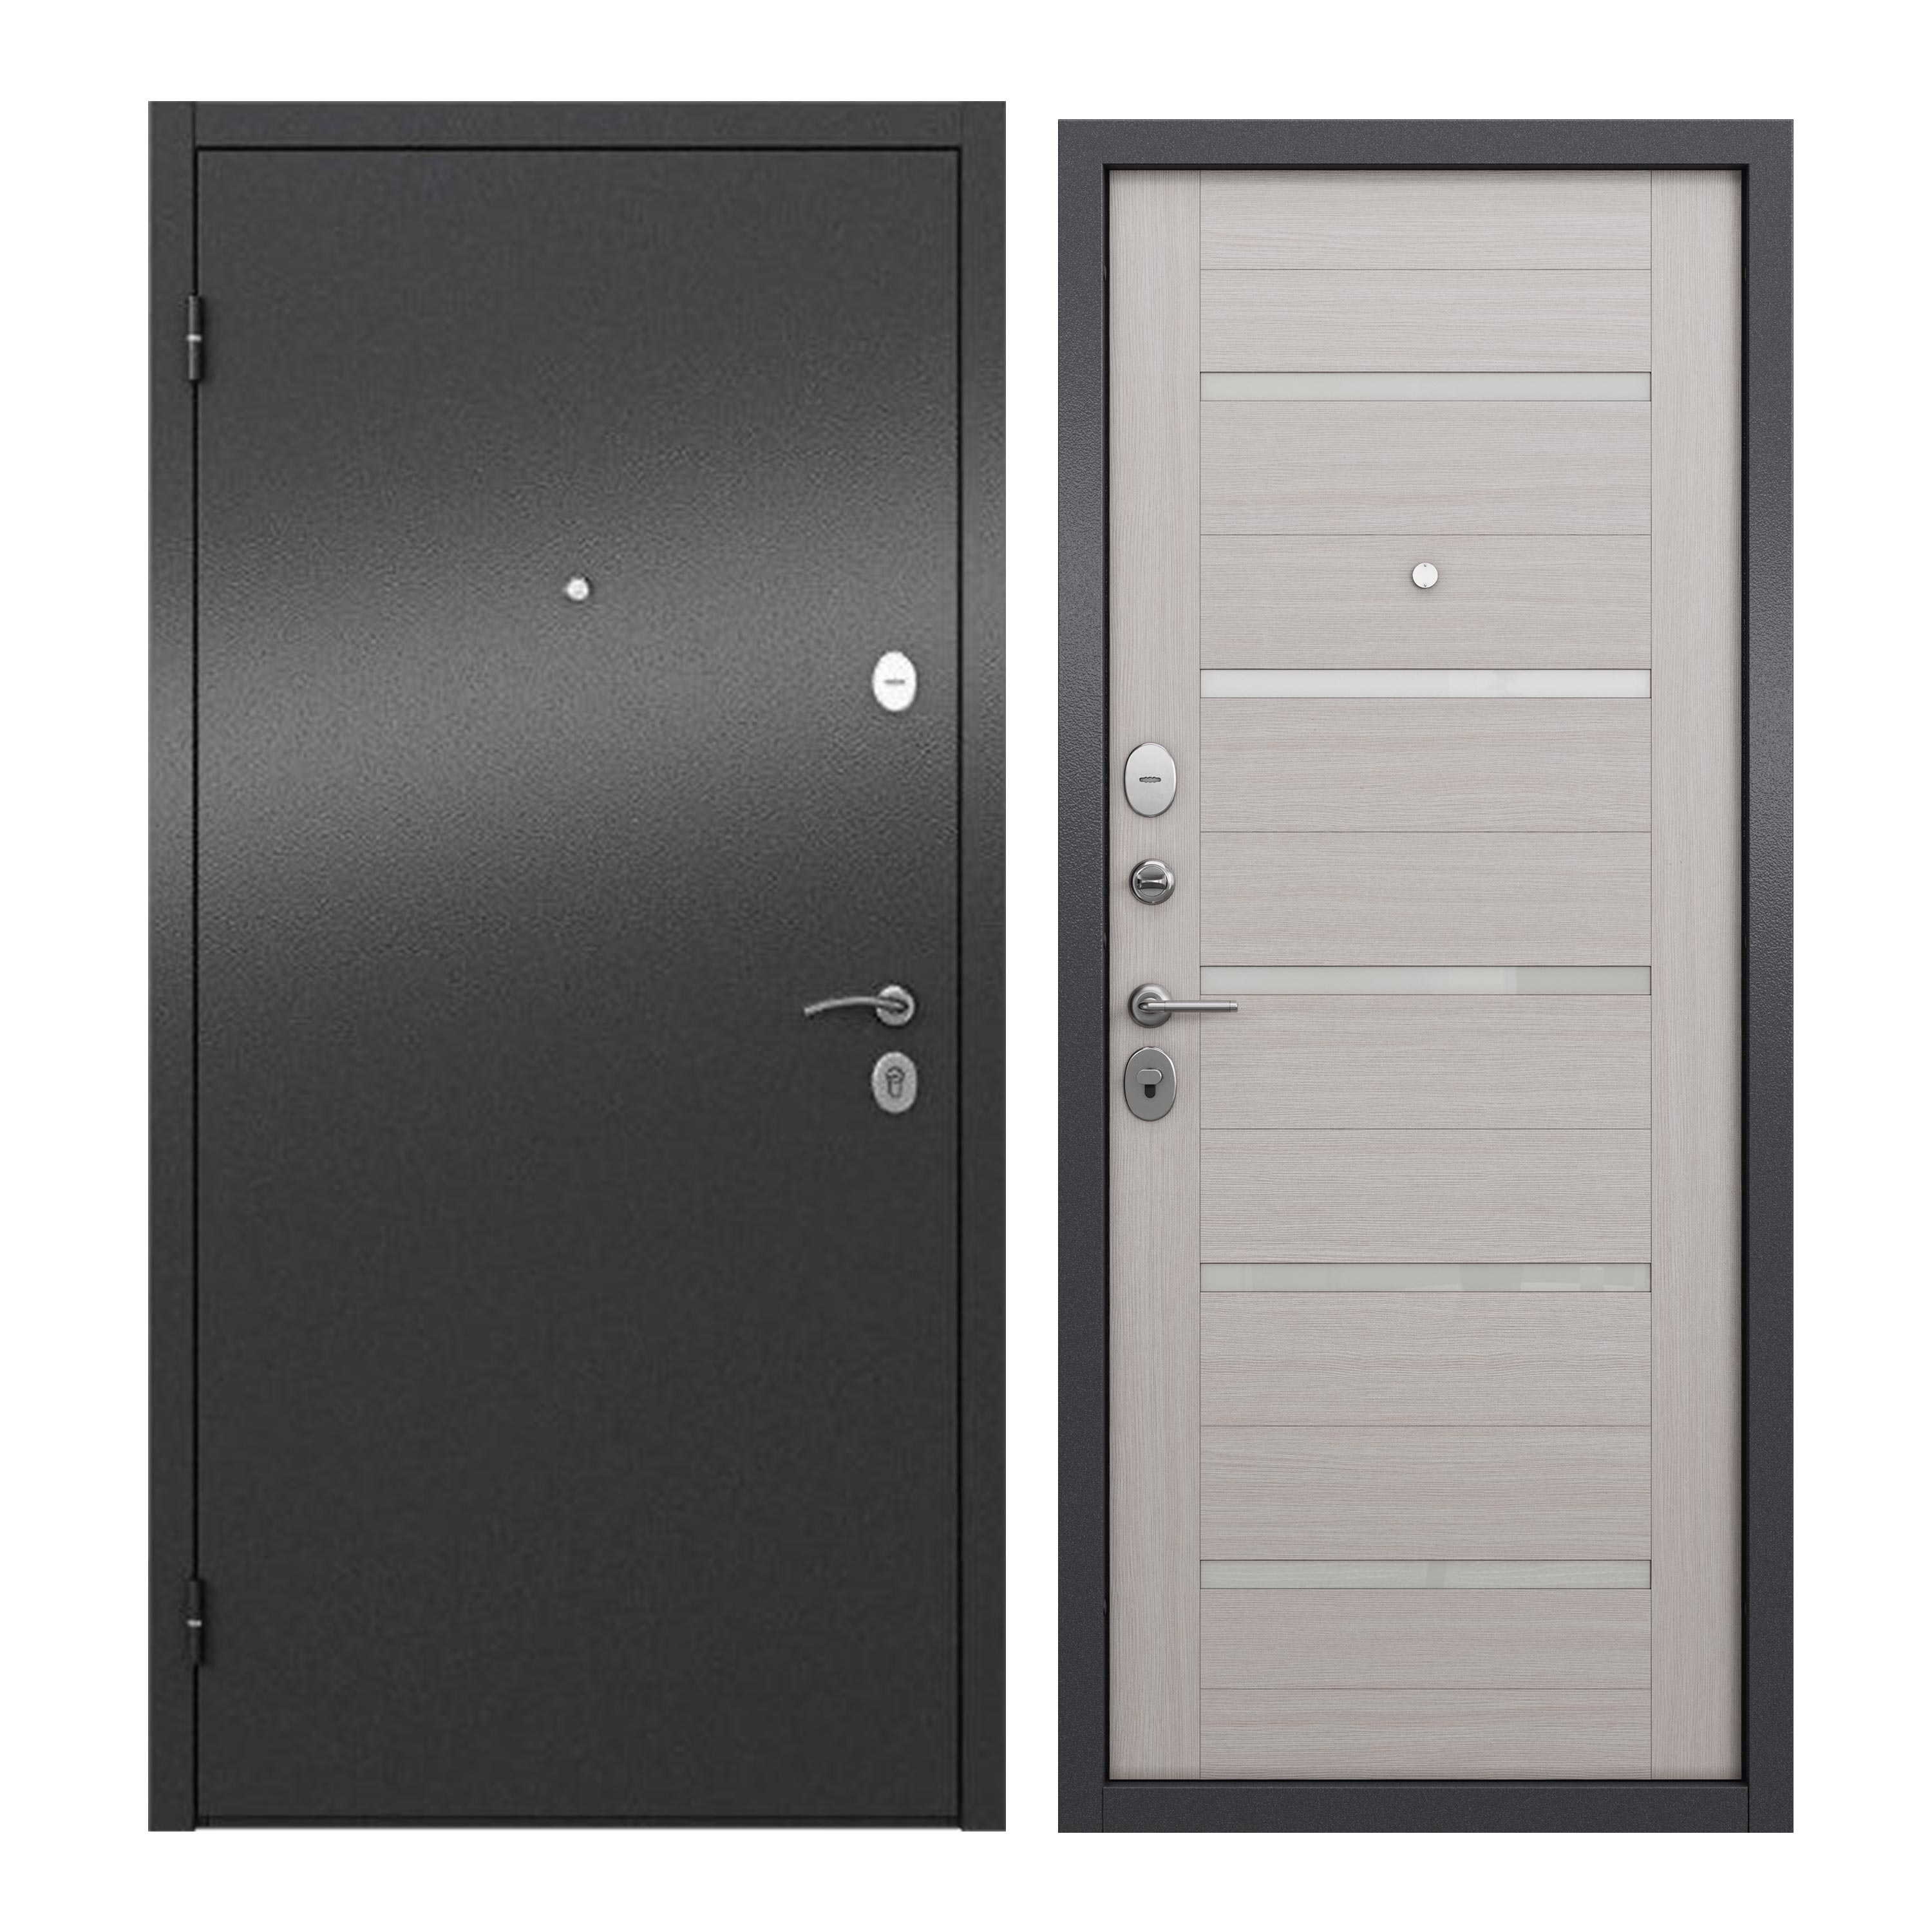 Дверь входная для квартиры ProLine металлическая Apartment X 960х2050, левая, серый дверь входная buldoors марко левая букле шоколад дуб шале натуральный со стеклом 960х2050 мм